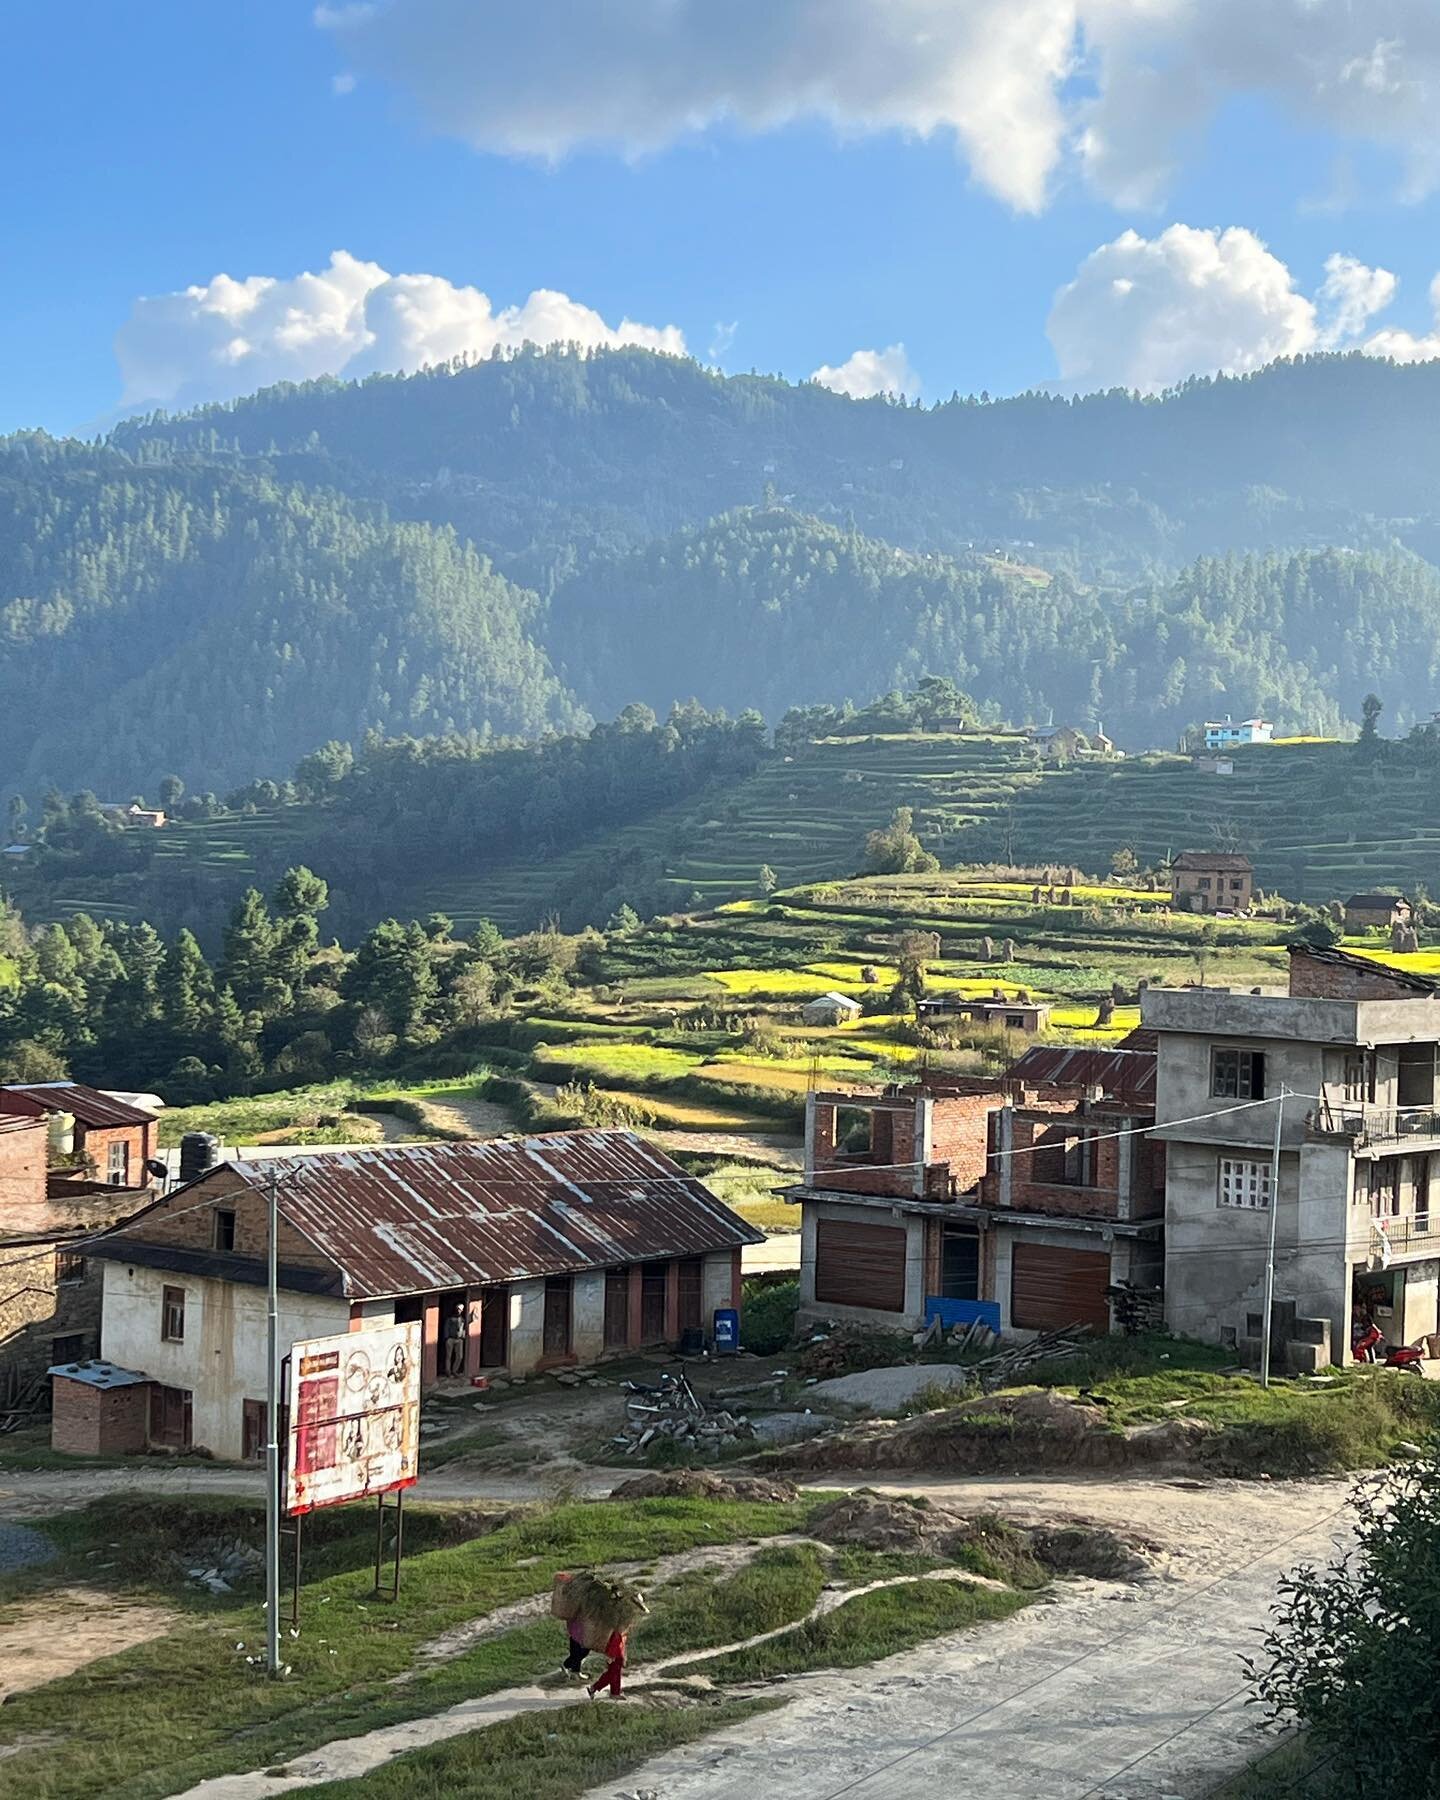 village moments of stillness 

#nepal